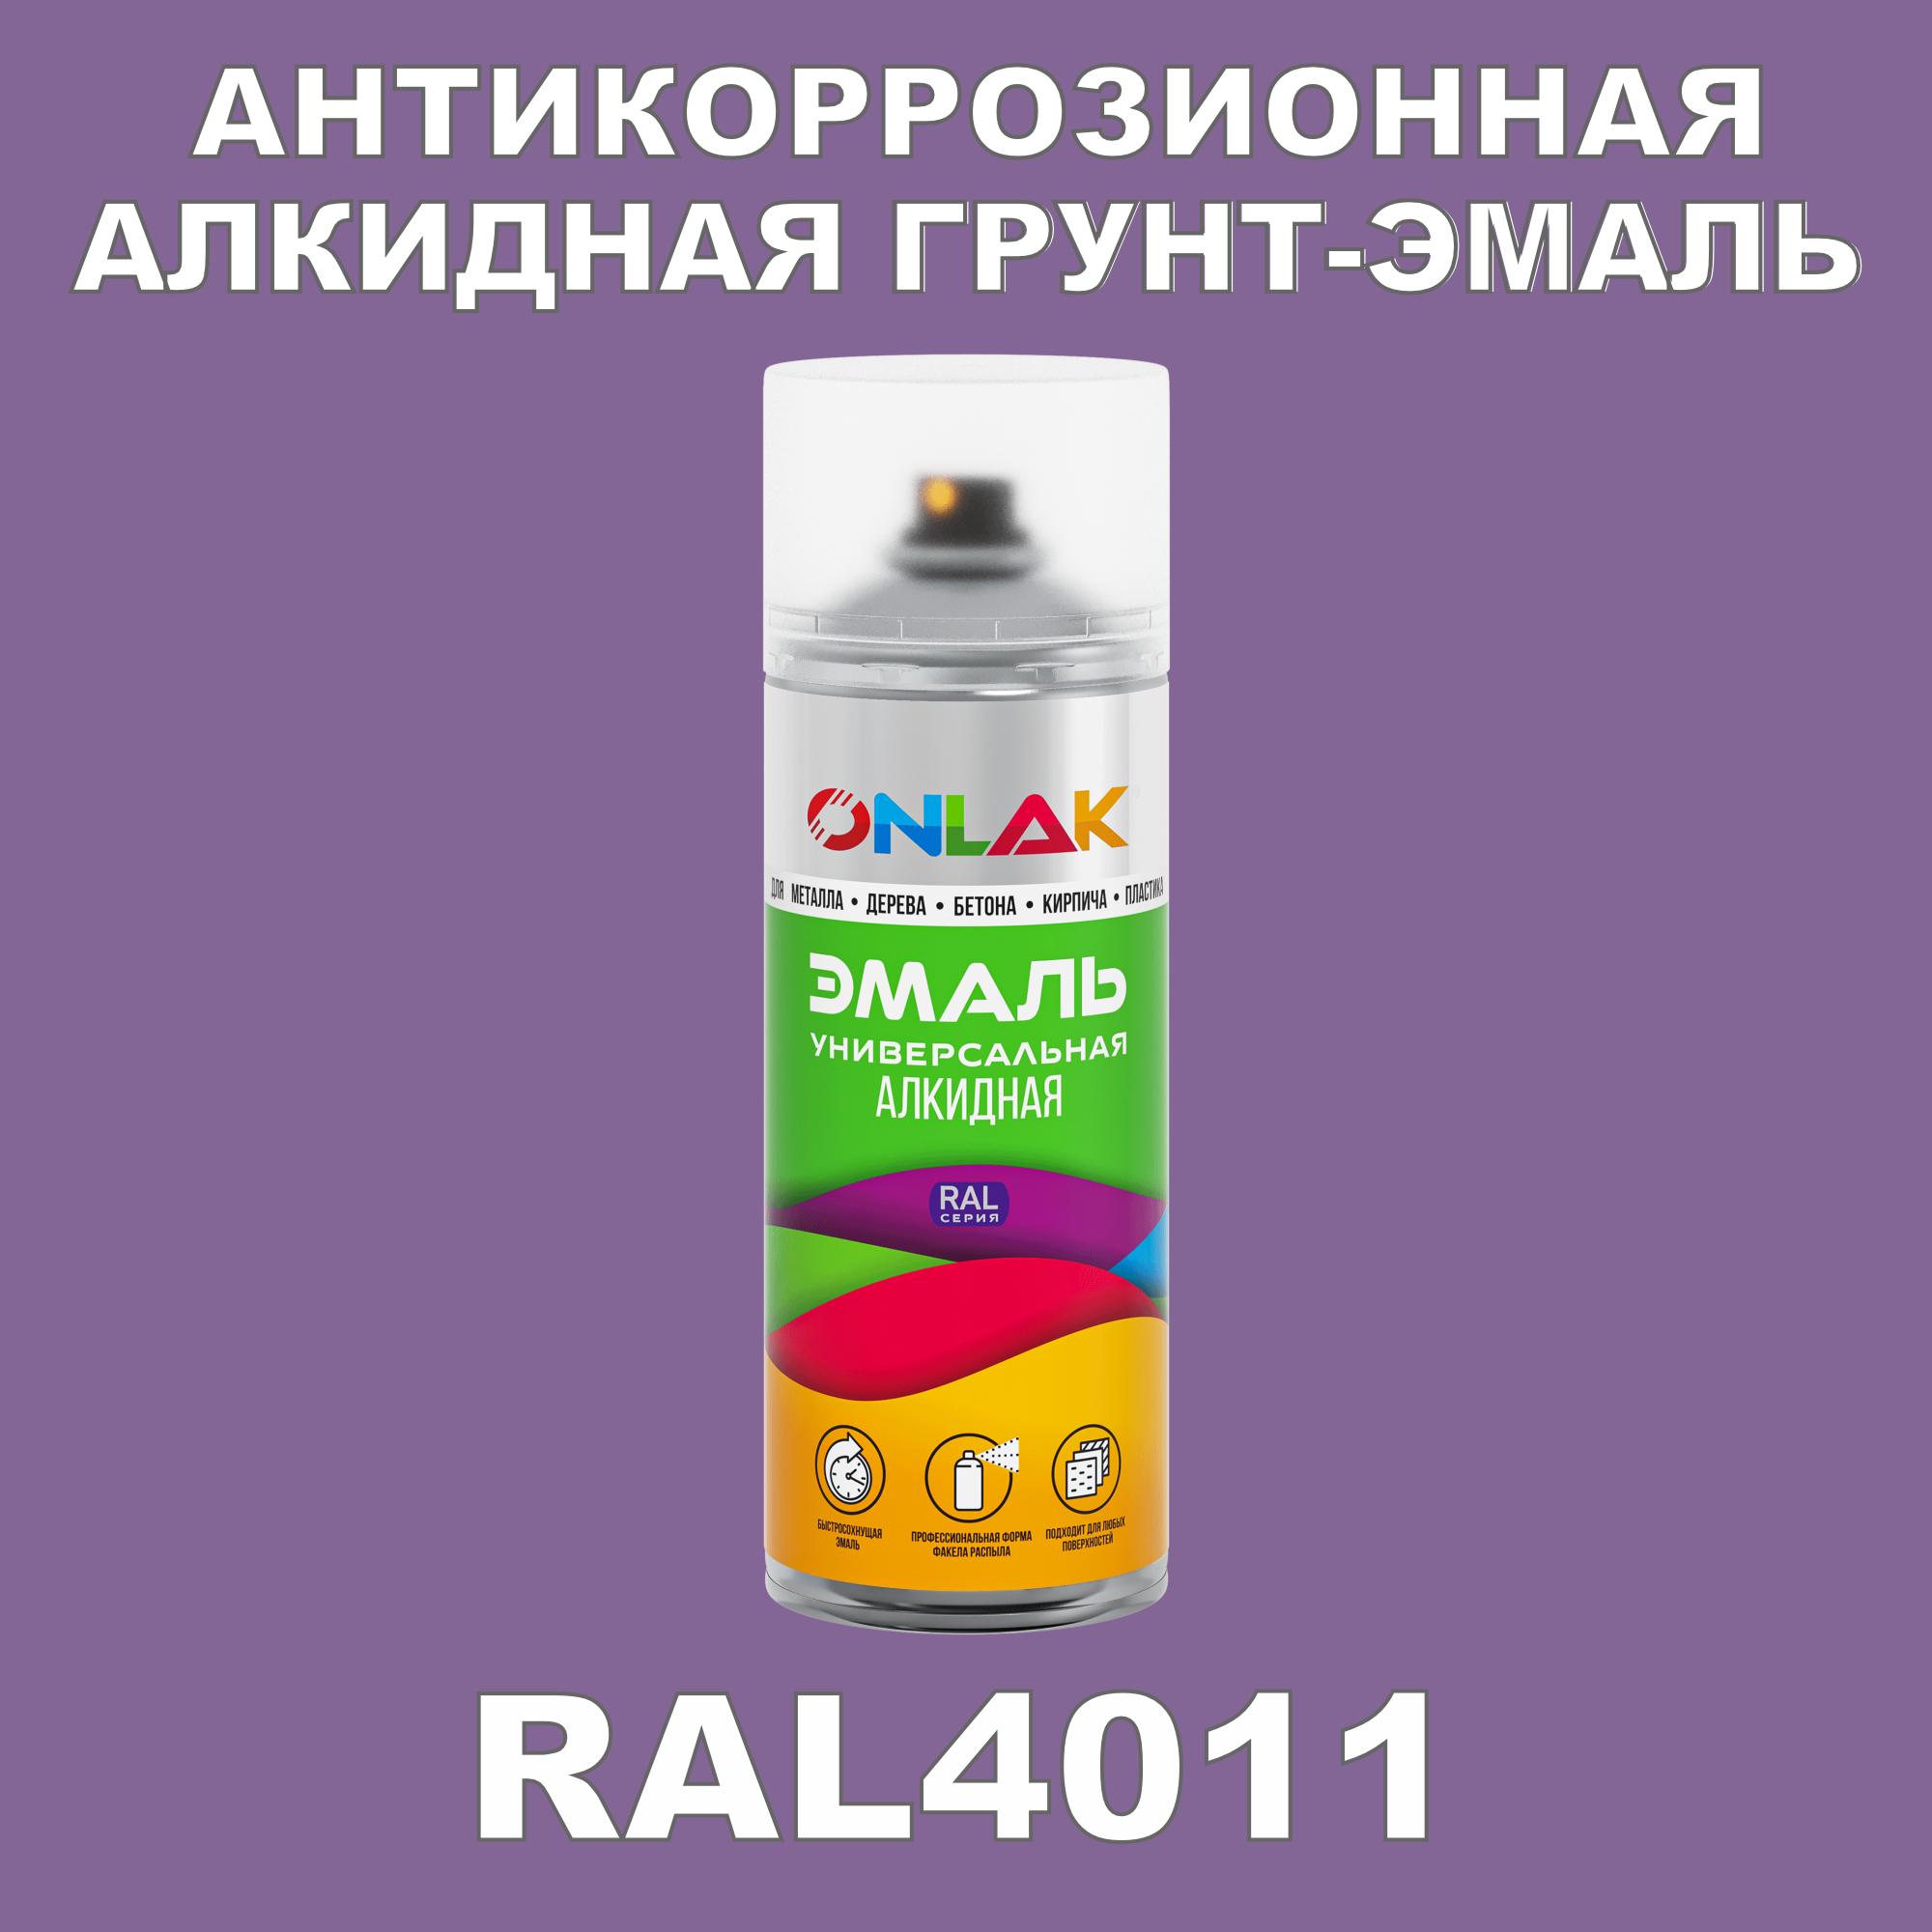 Антикоррозионная грунт-эмаль ONLAK RAL 4011,фиолетовый,550 мл антикоррозионная грунт эмаль onlak ral 4008 фиолетовый 610 мл